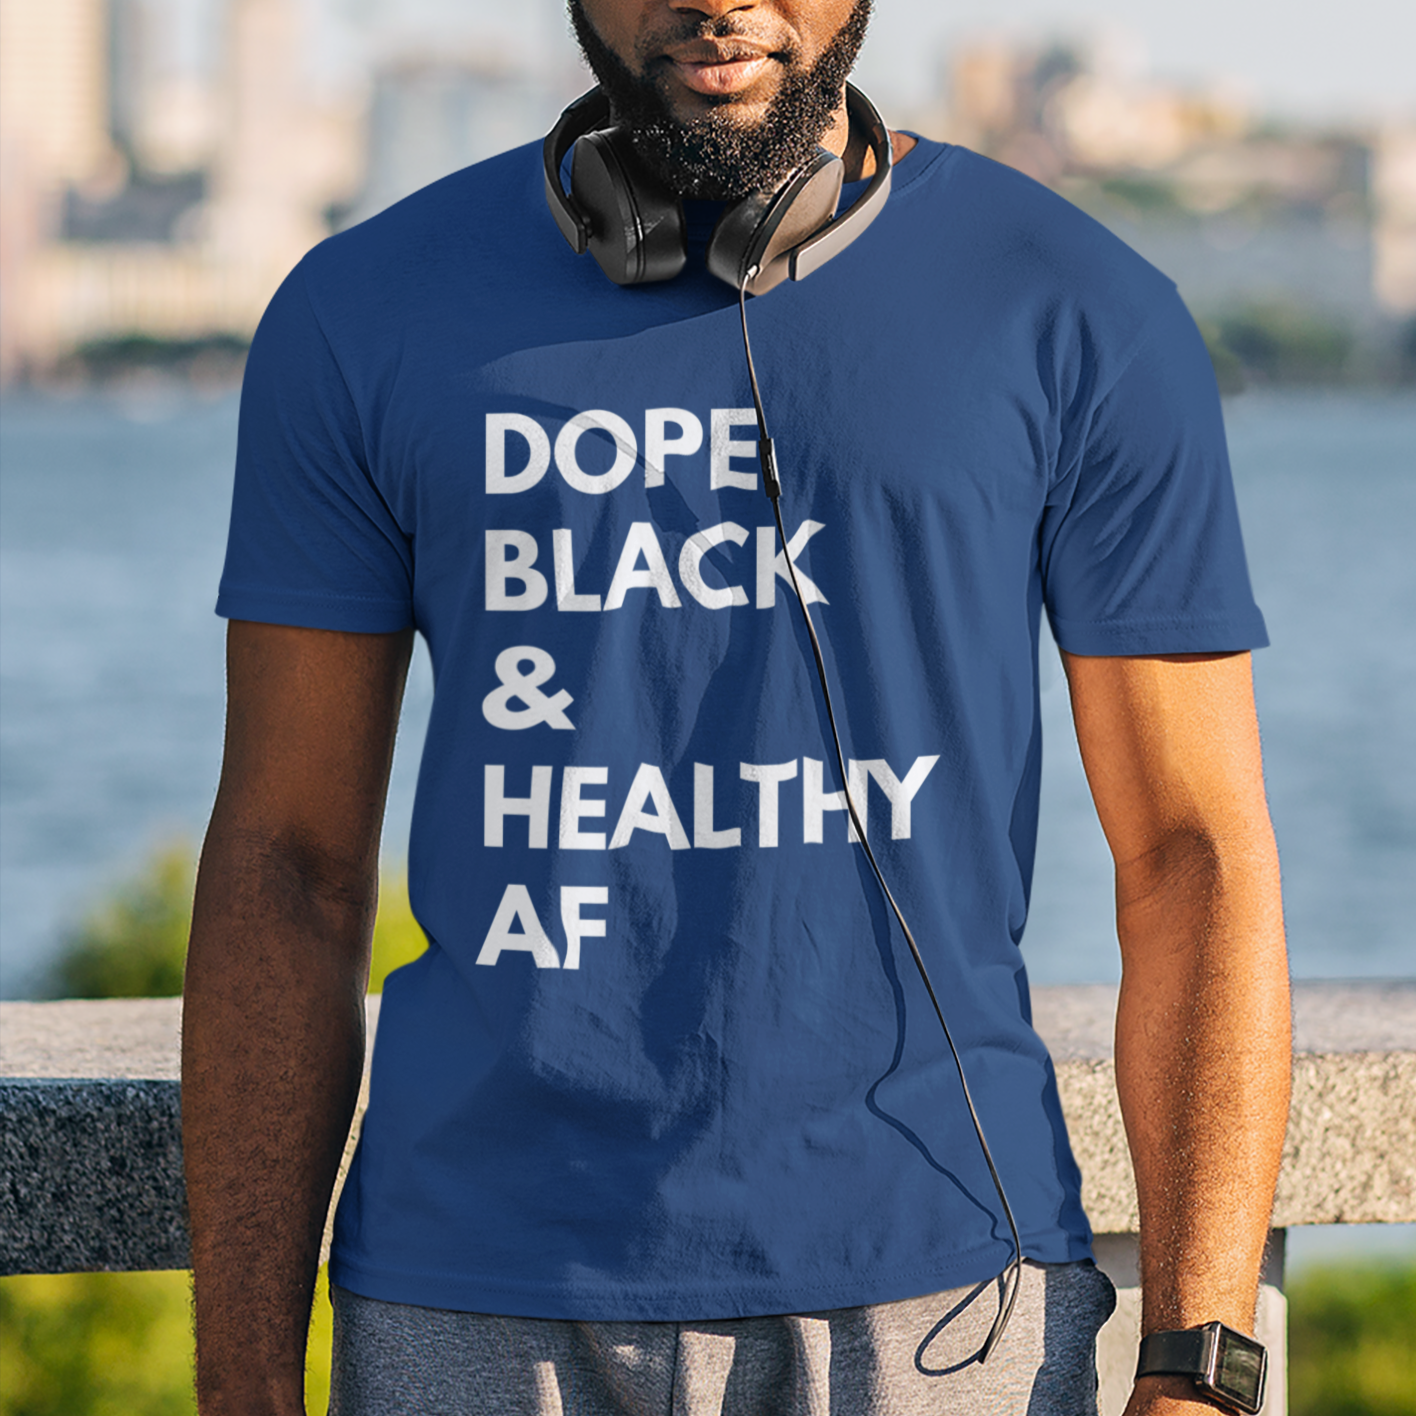 Dope black and healthy AF t-shirt